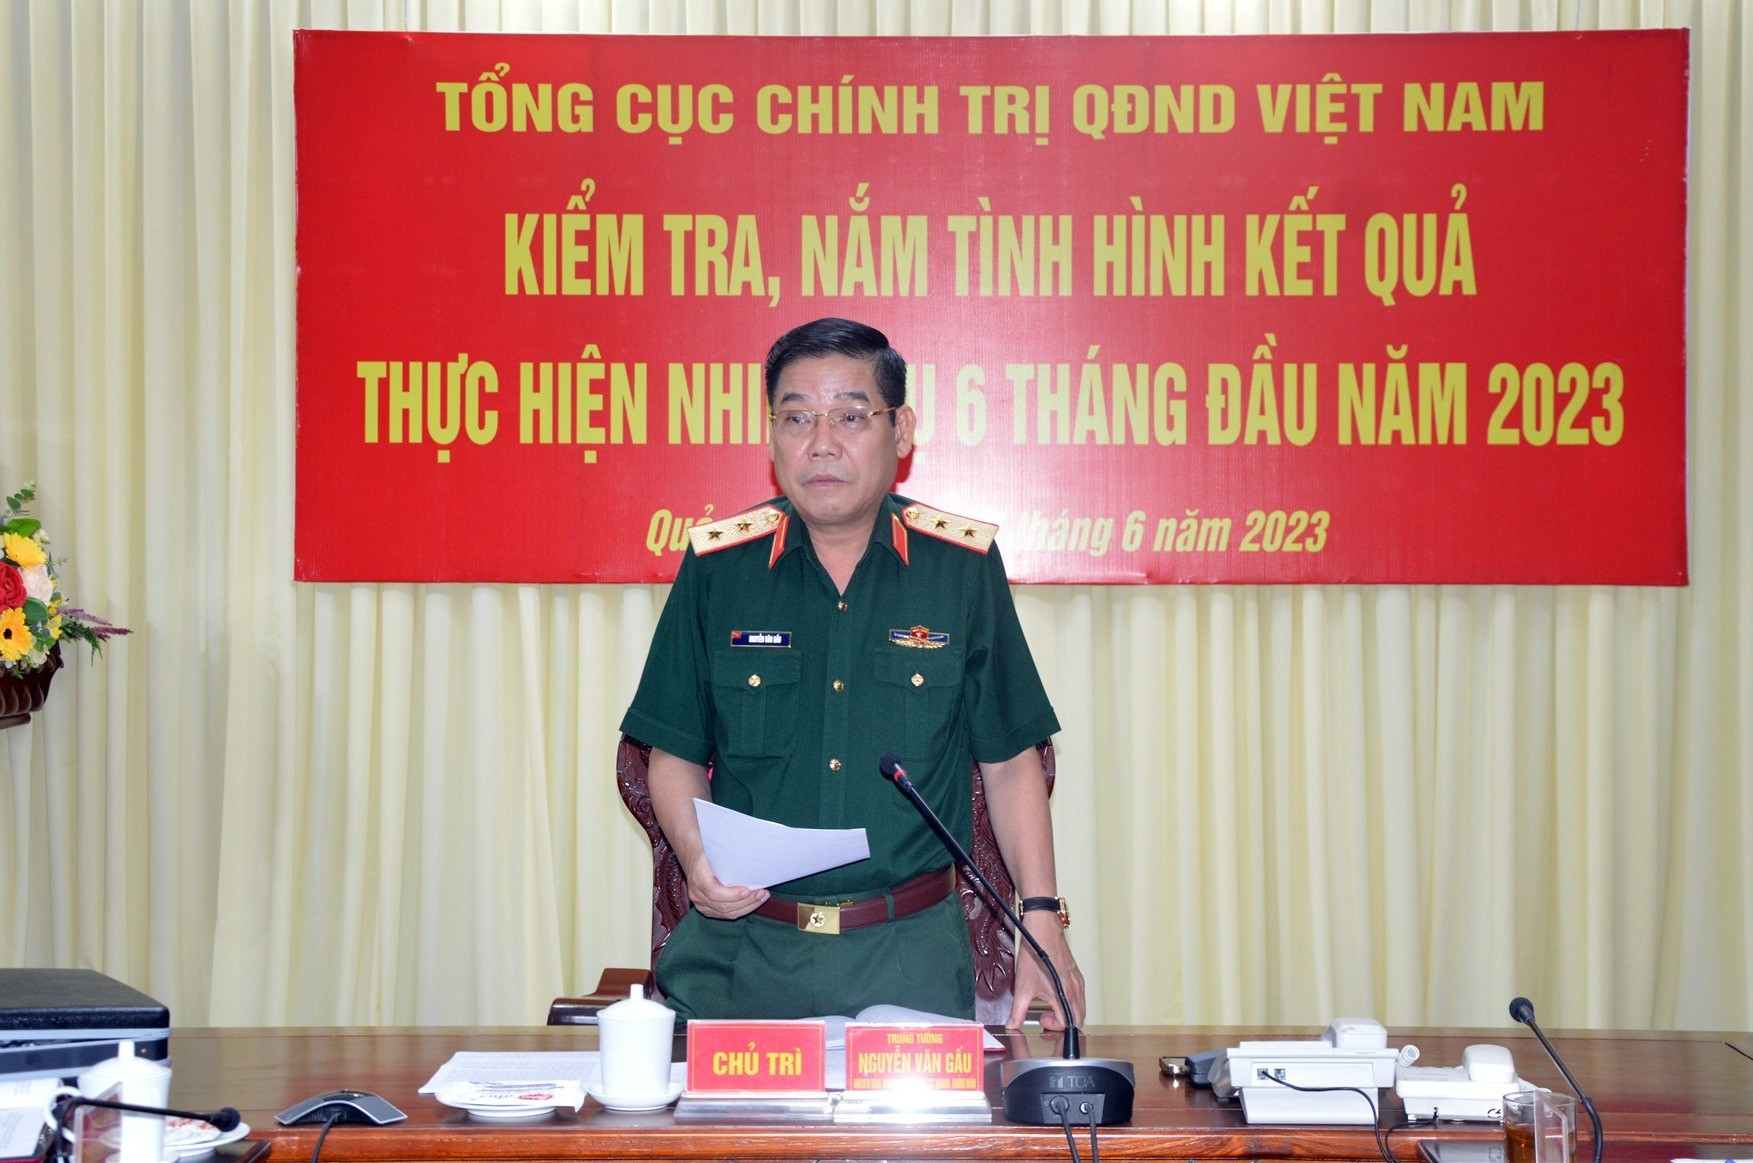 Trung tướng Nguyễn Văn Gấu, Phó Chủ nhiệm Tổng cục Chính trị phát biểu tại buổi kiểm tra.